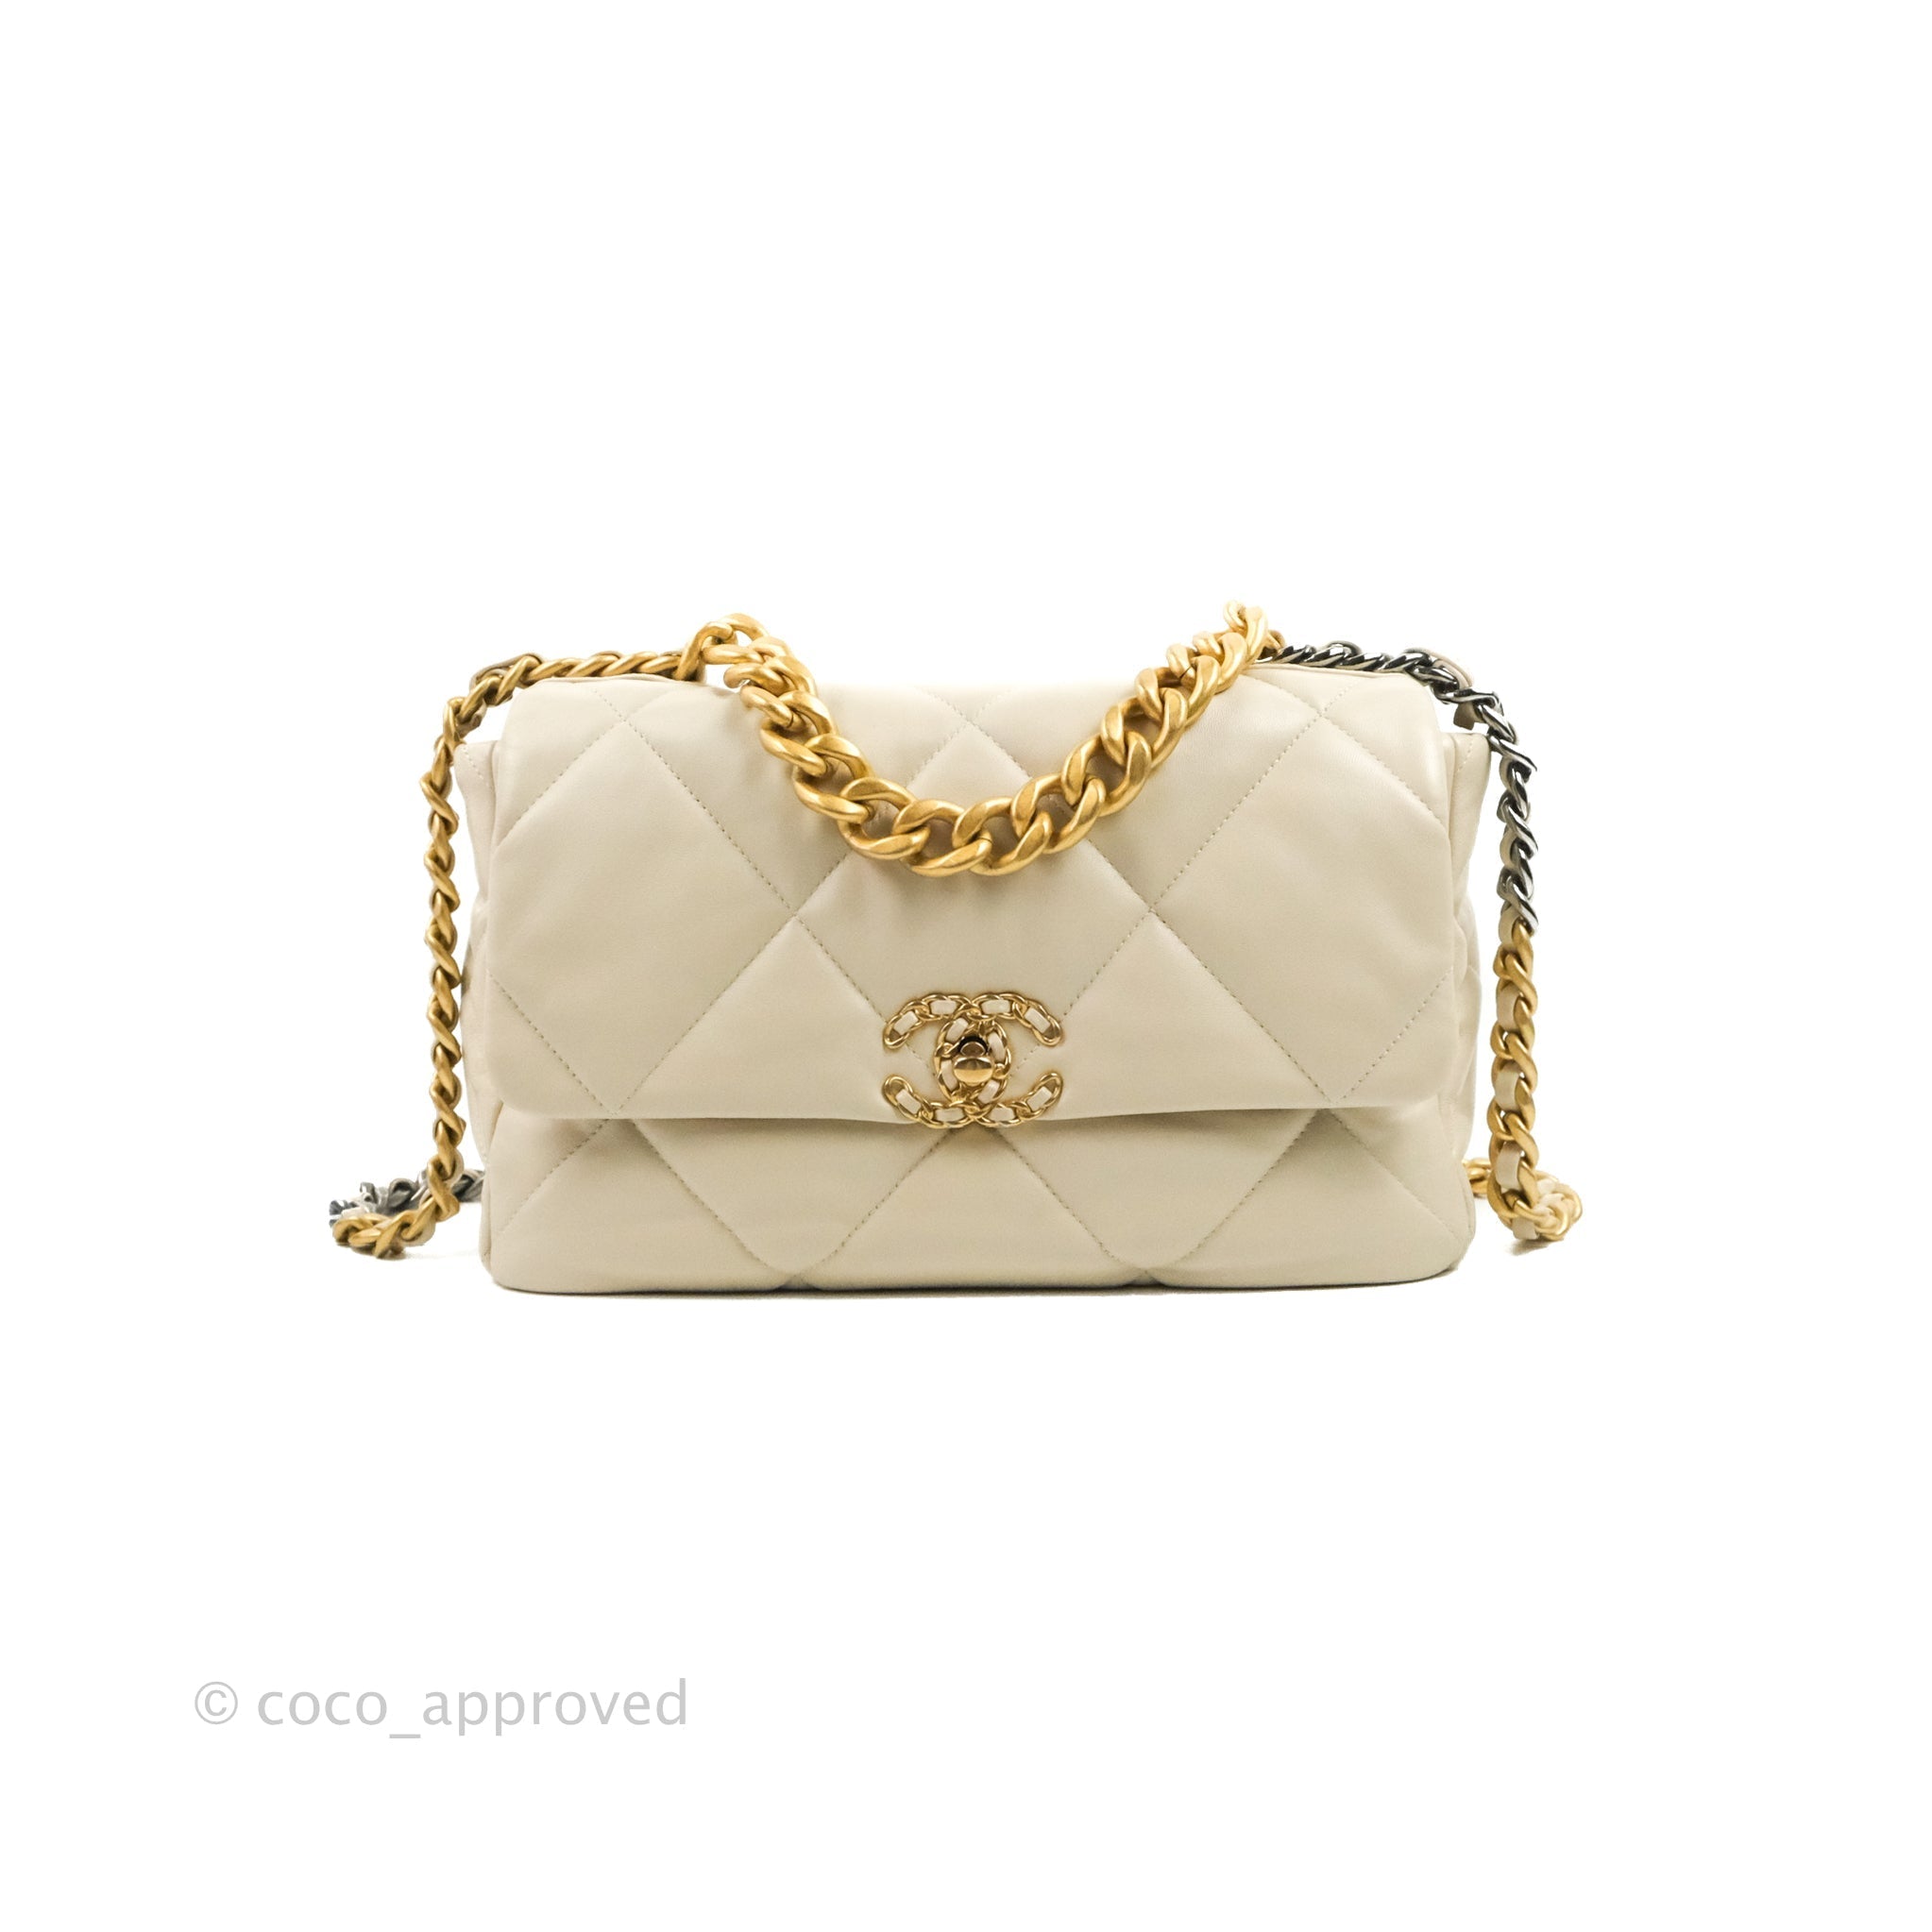 Chanel Chanel 19 Medium Flap Bag